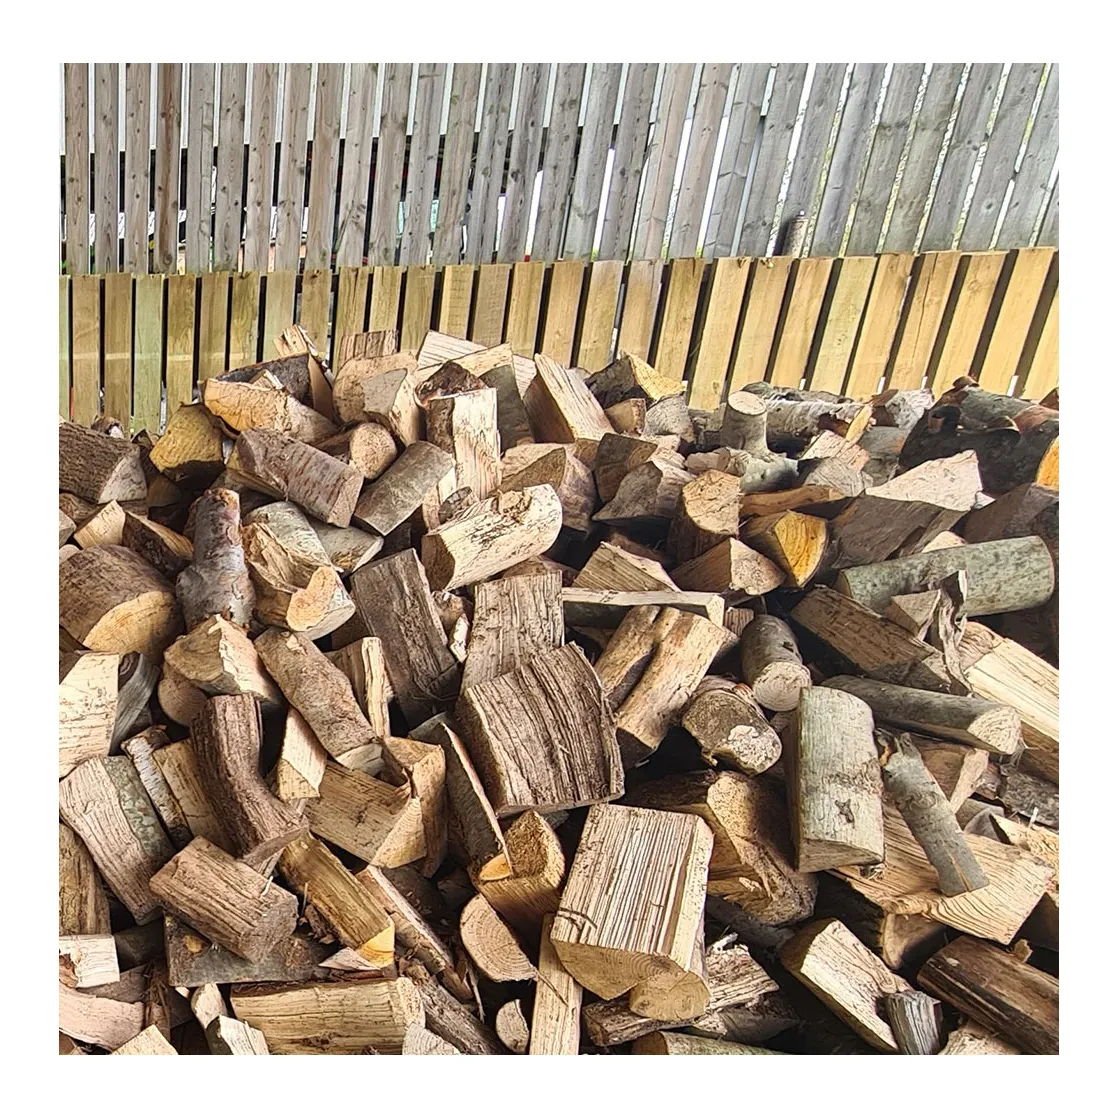 Mangroven-Hardholz-Kernholz Birken-Diechen- und Buchen-Baumholz-Kernholz